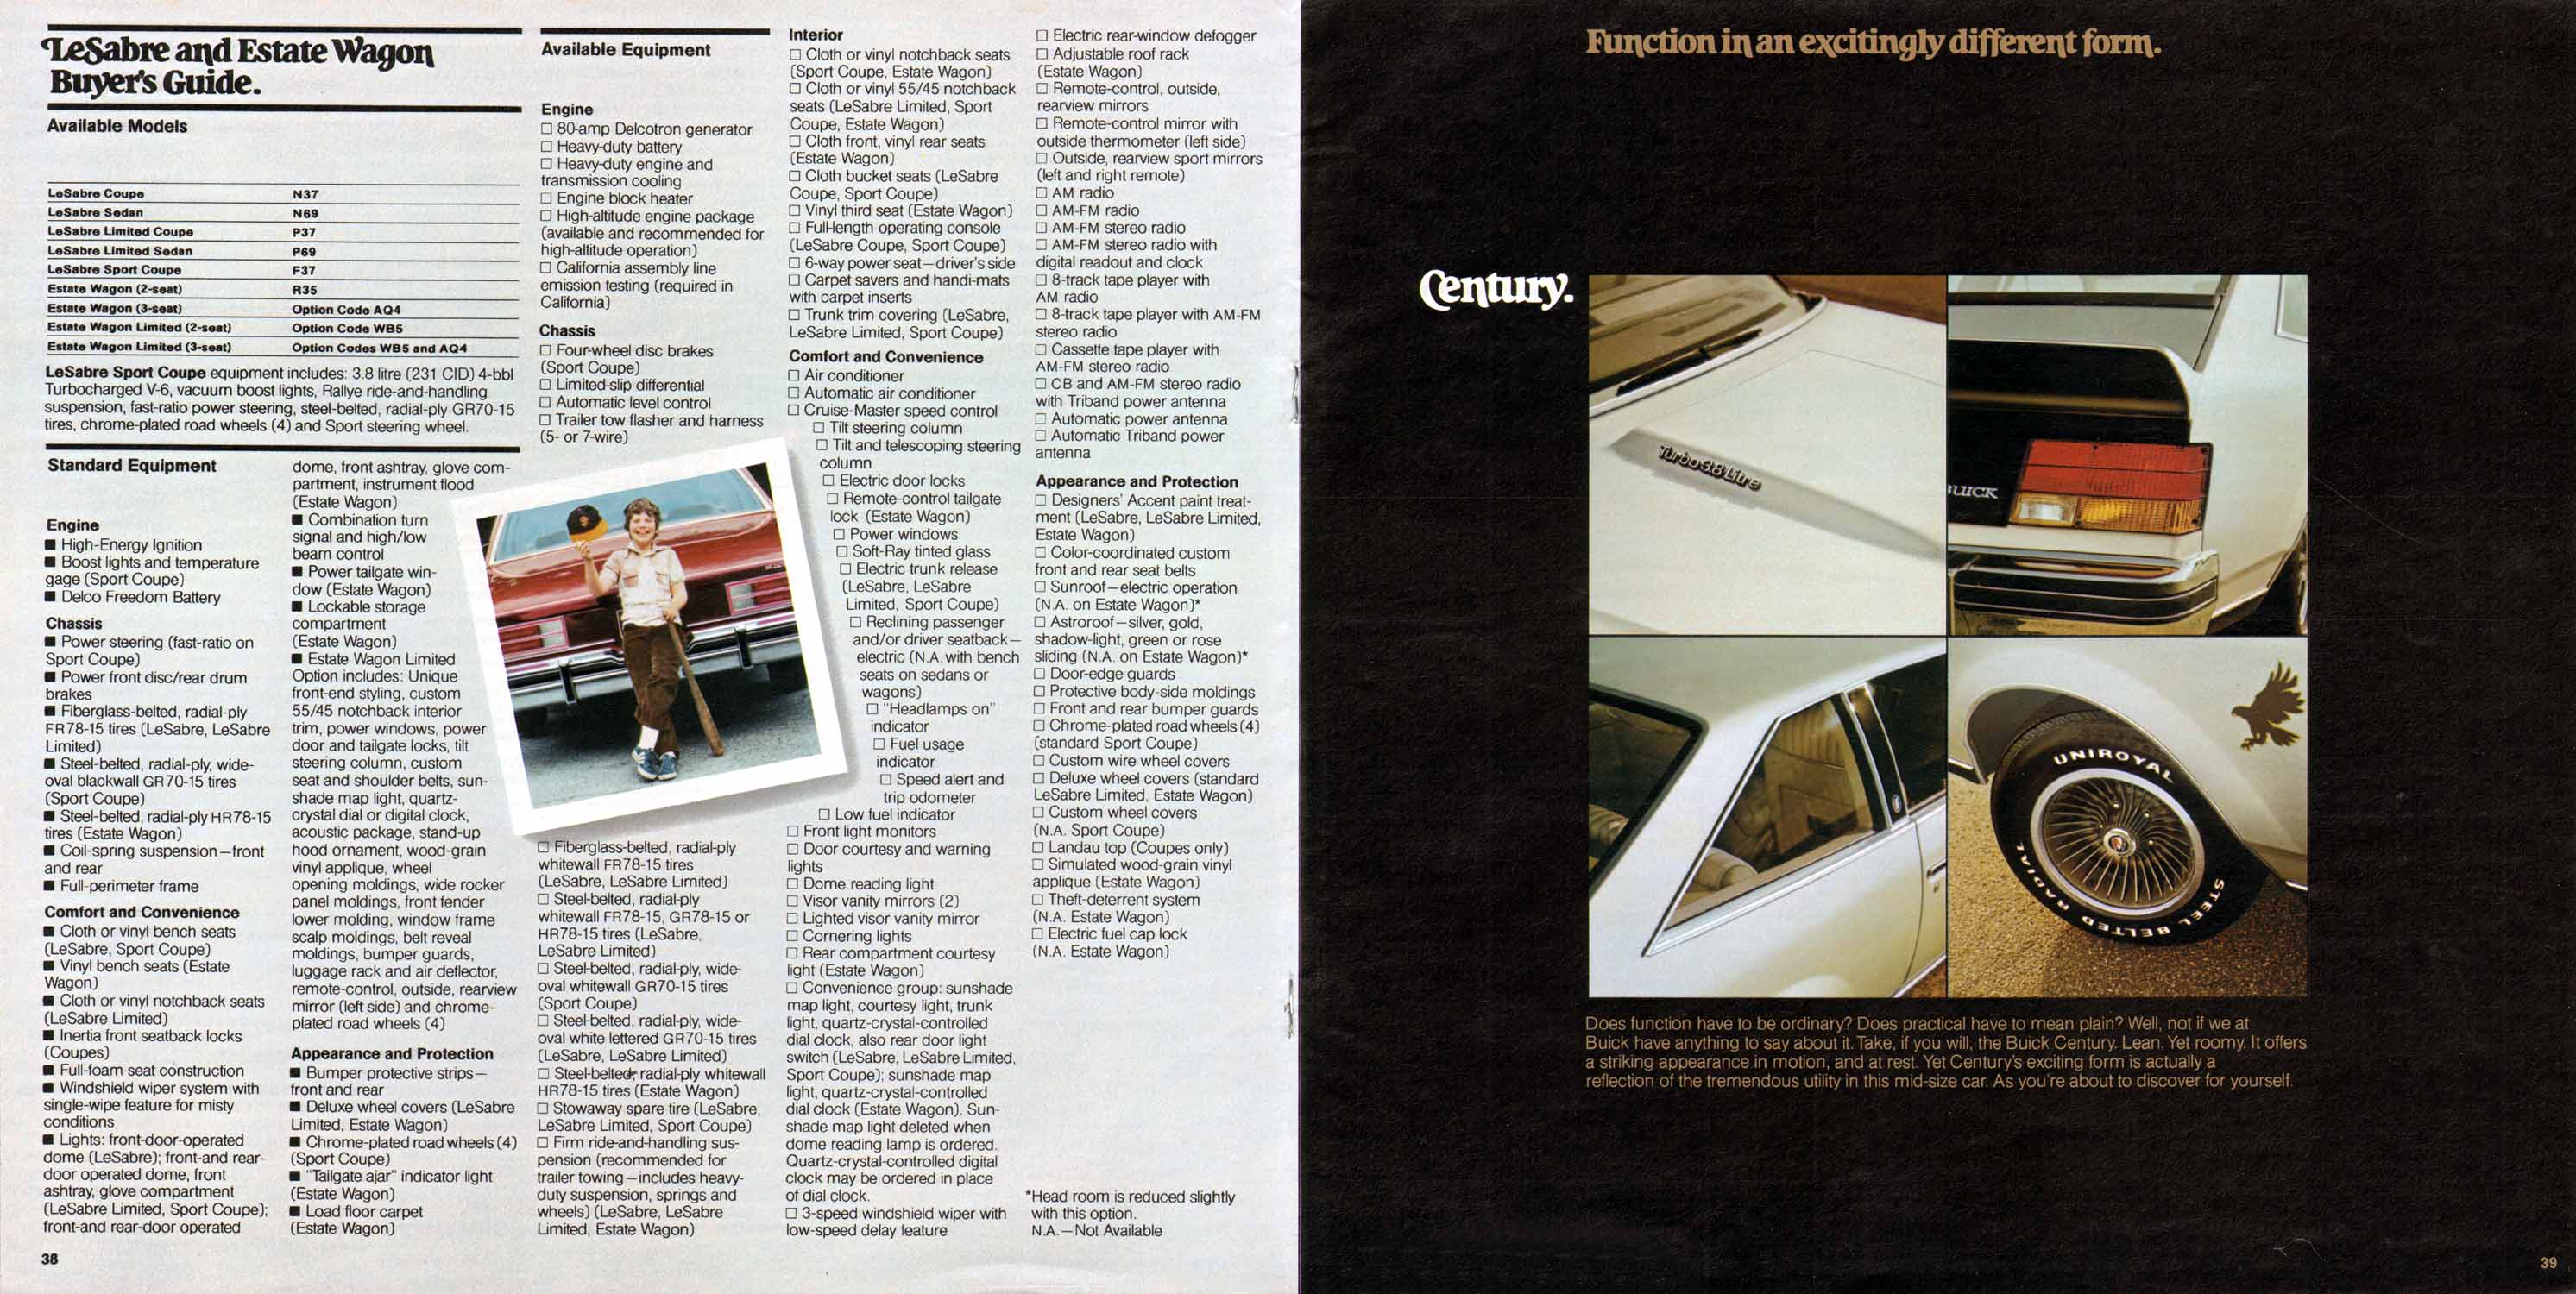 1979 Buick Full Line Prestige-38-39